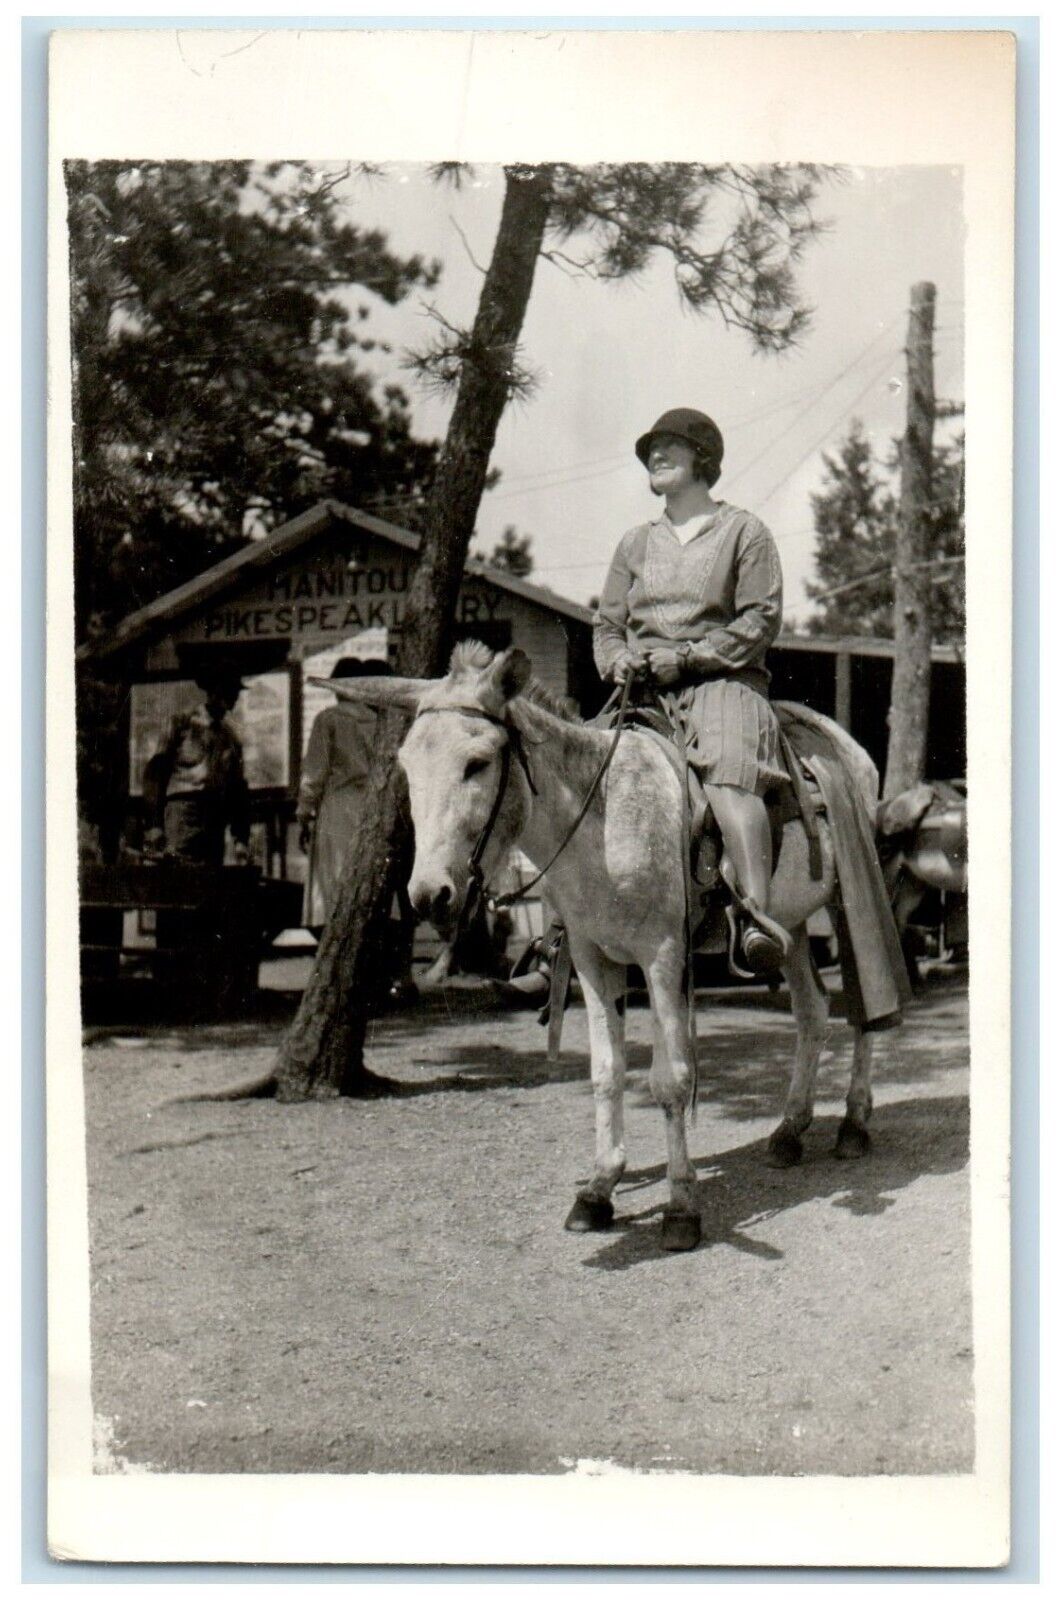 c1930's Manitou Pikes Peak Woman Riding Horse Manitou CO RPPC Photo Postcard